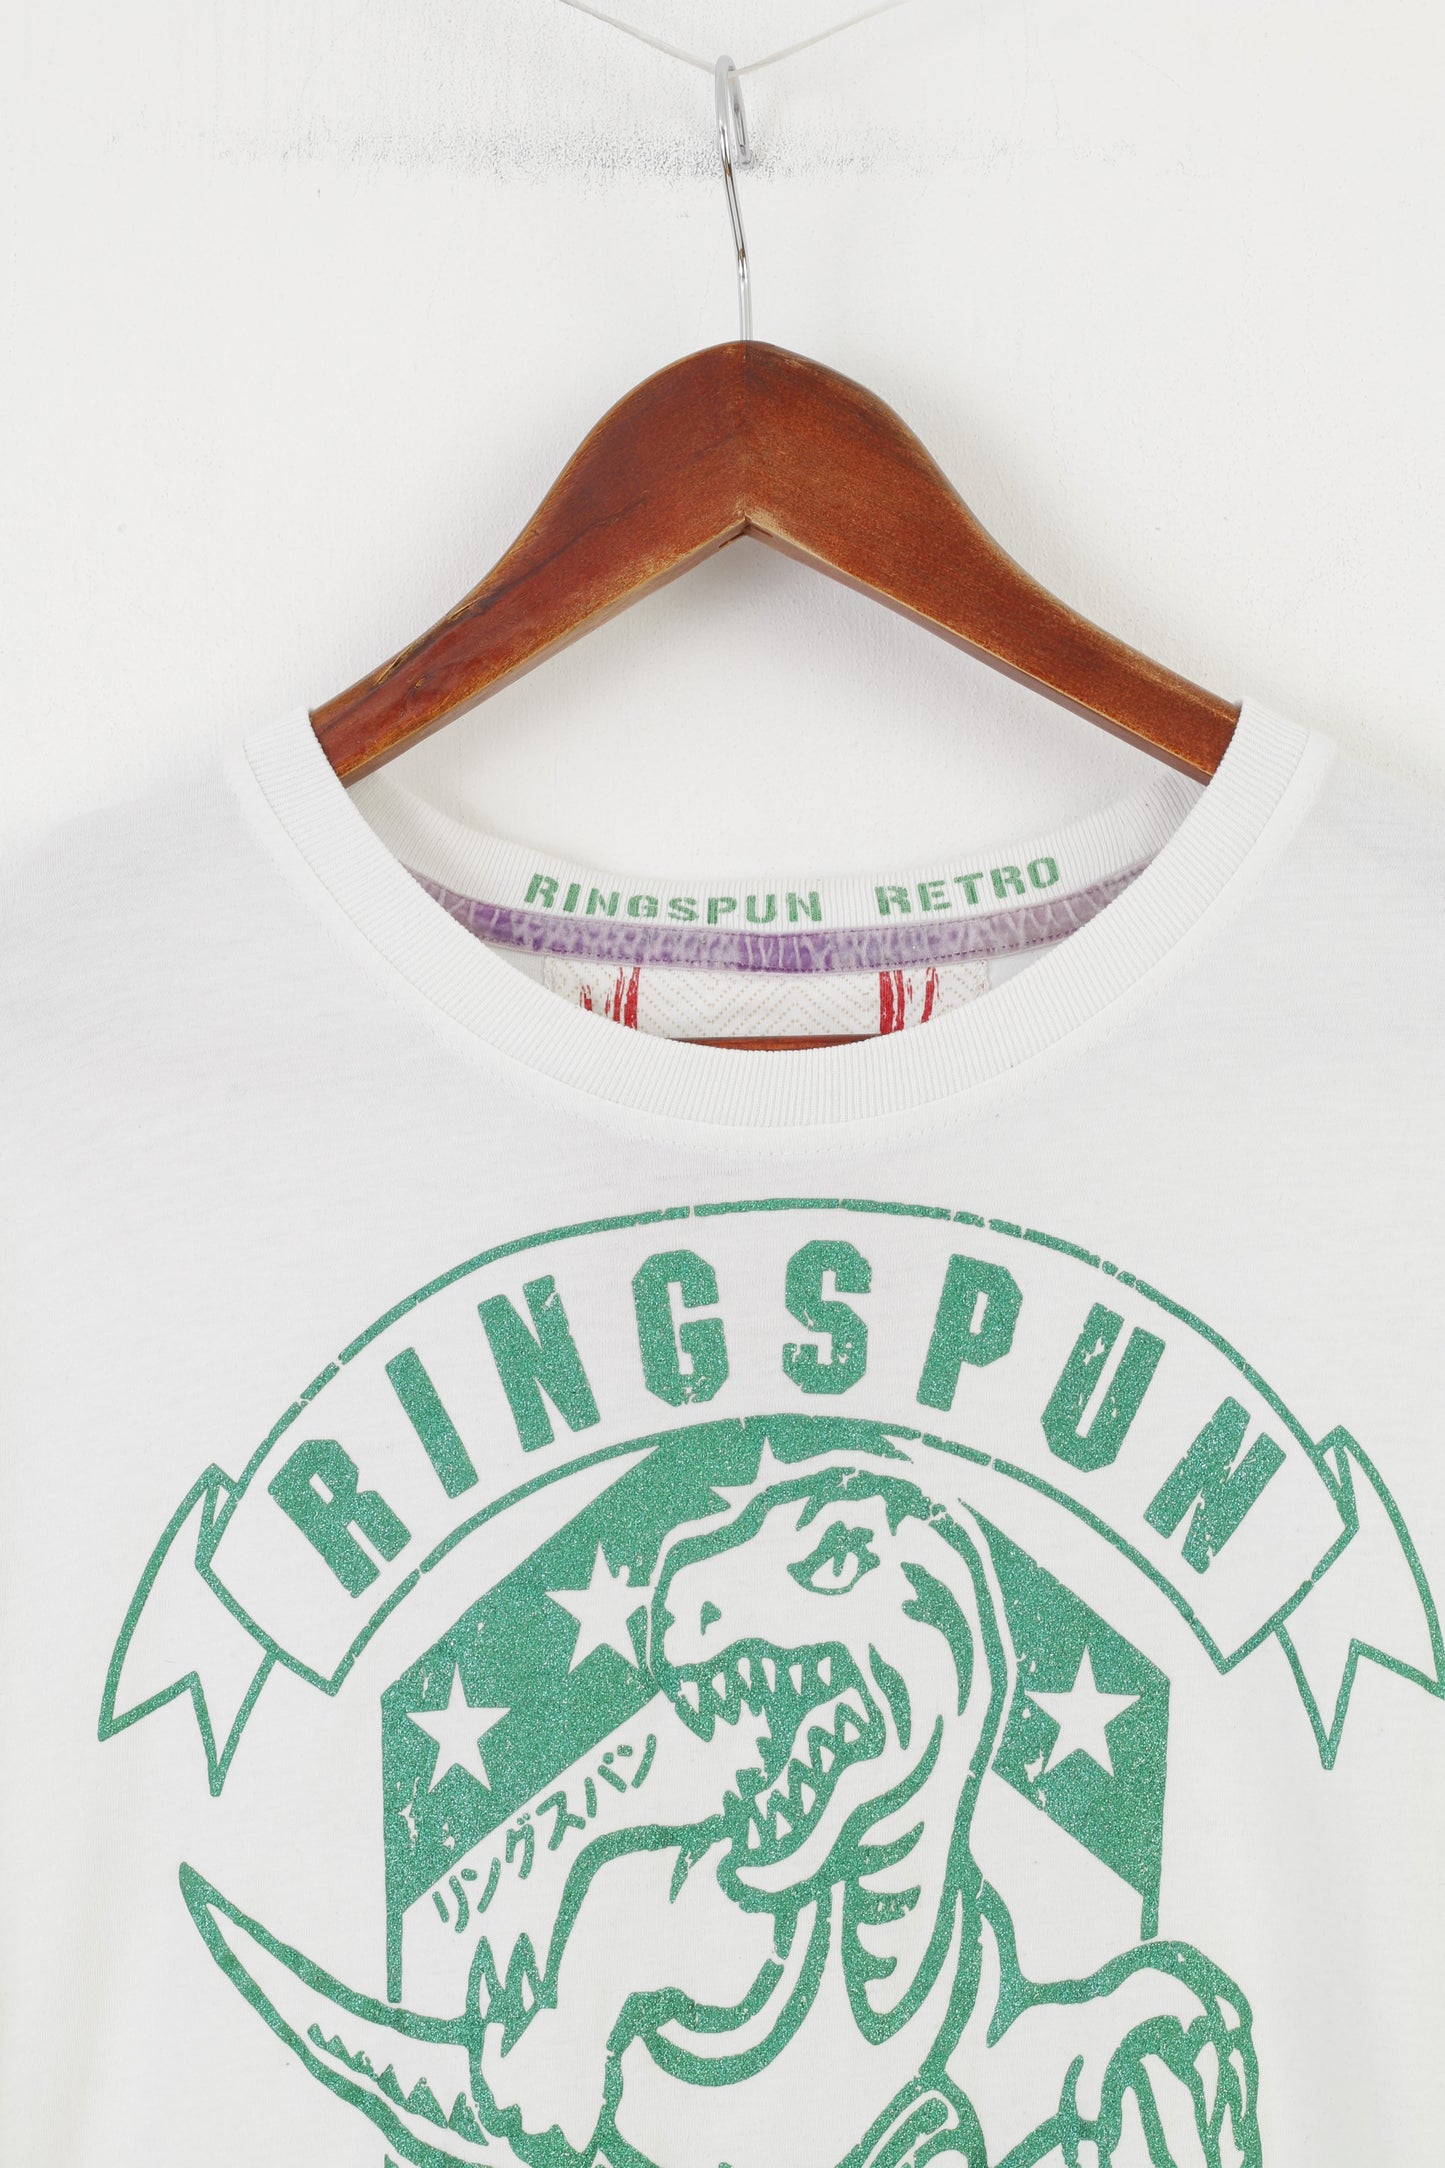 Ringspun Homme L (S) Chemise Blanc Coton Sport Dinosaure Graphique Vintage Top